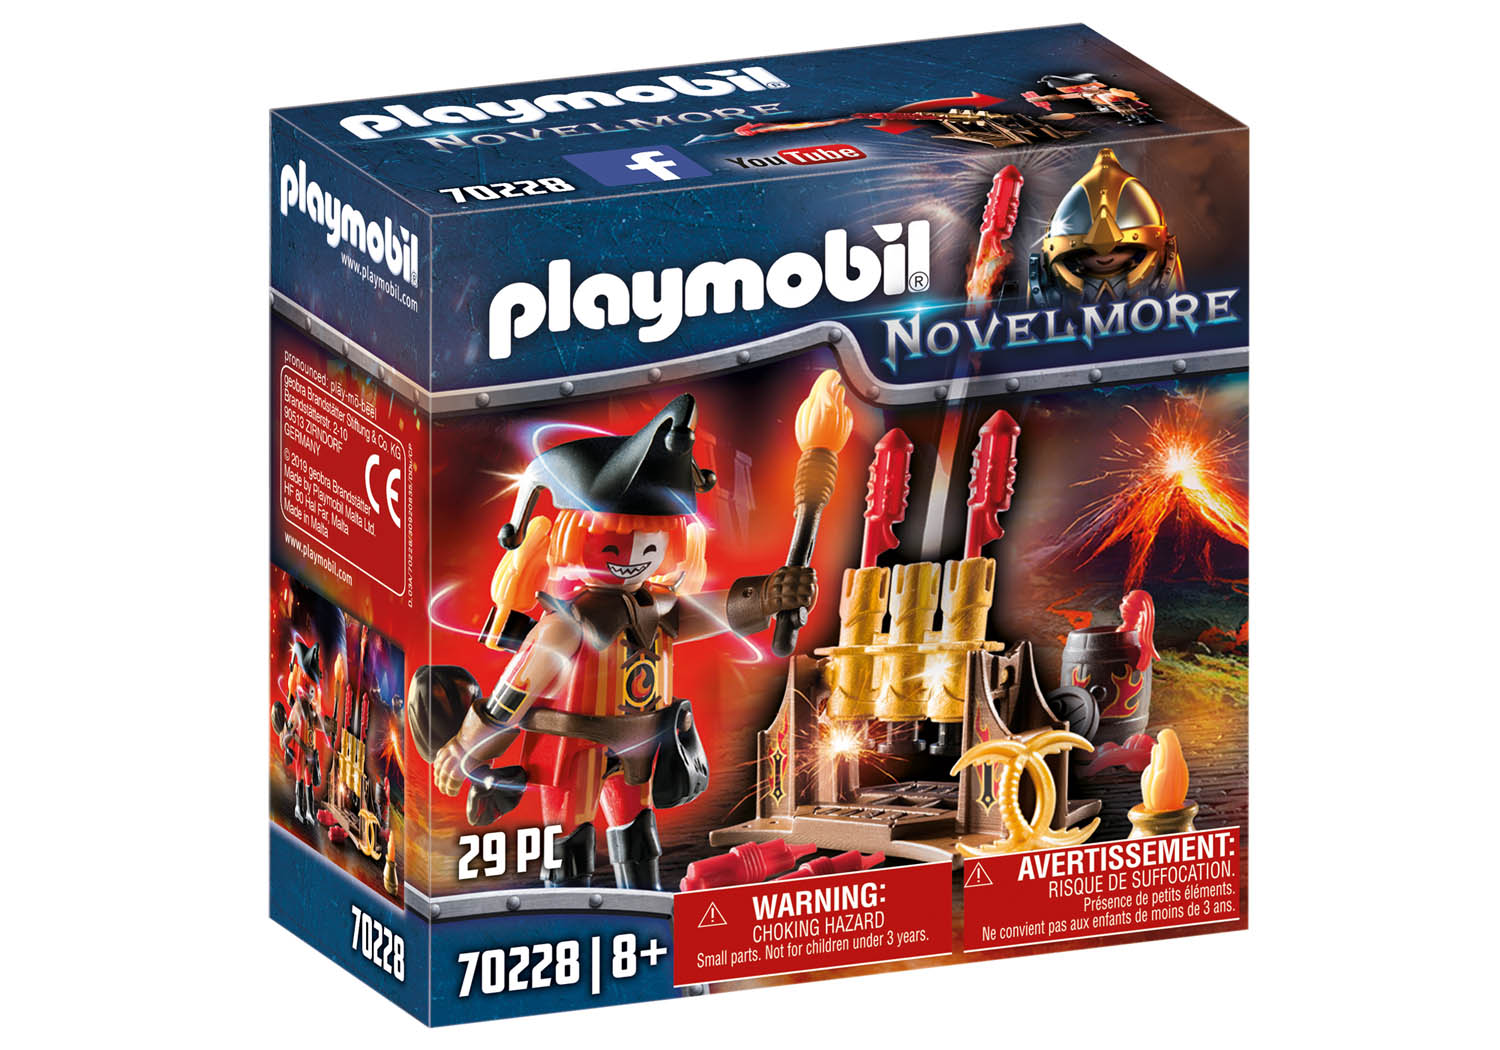 Playmobil Novelmore - Shop by Theme